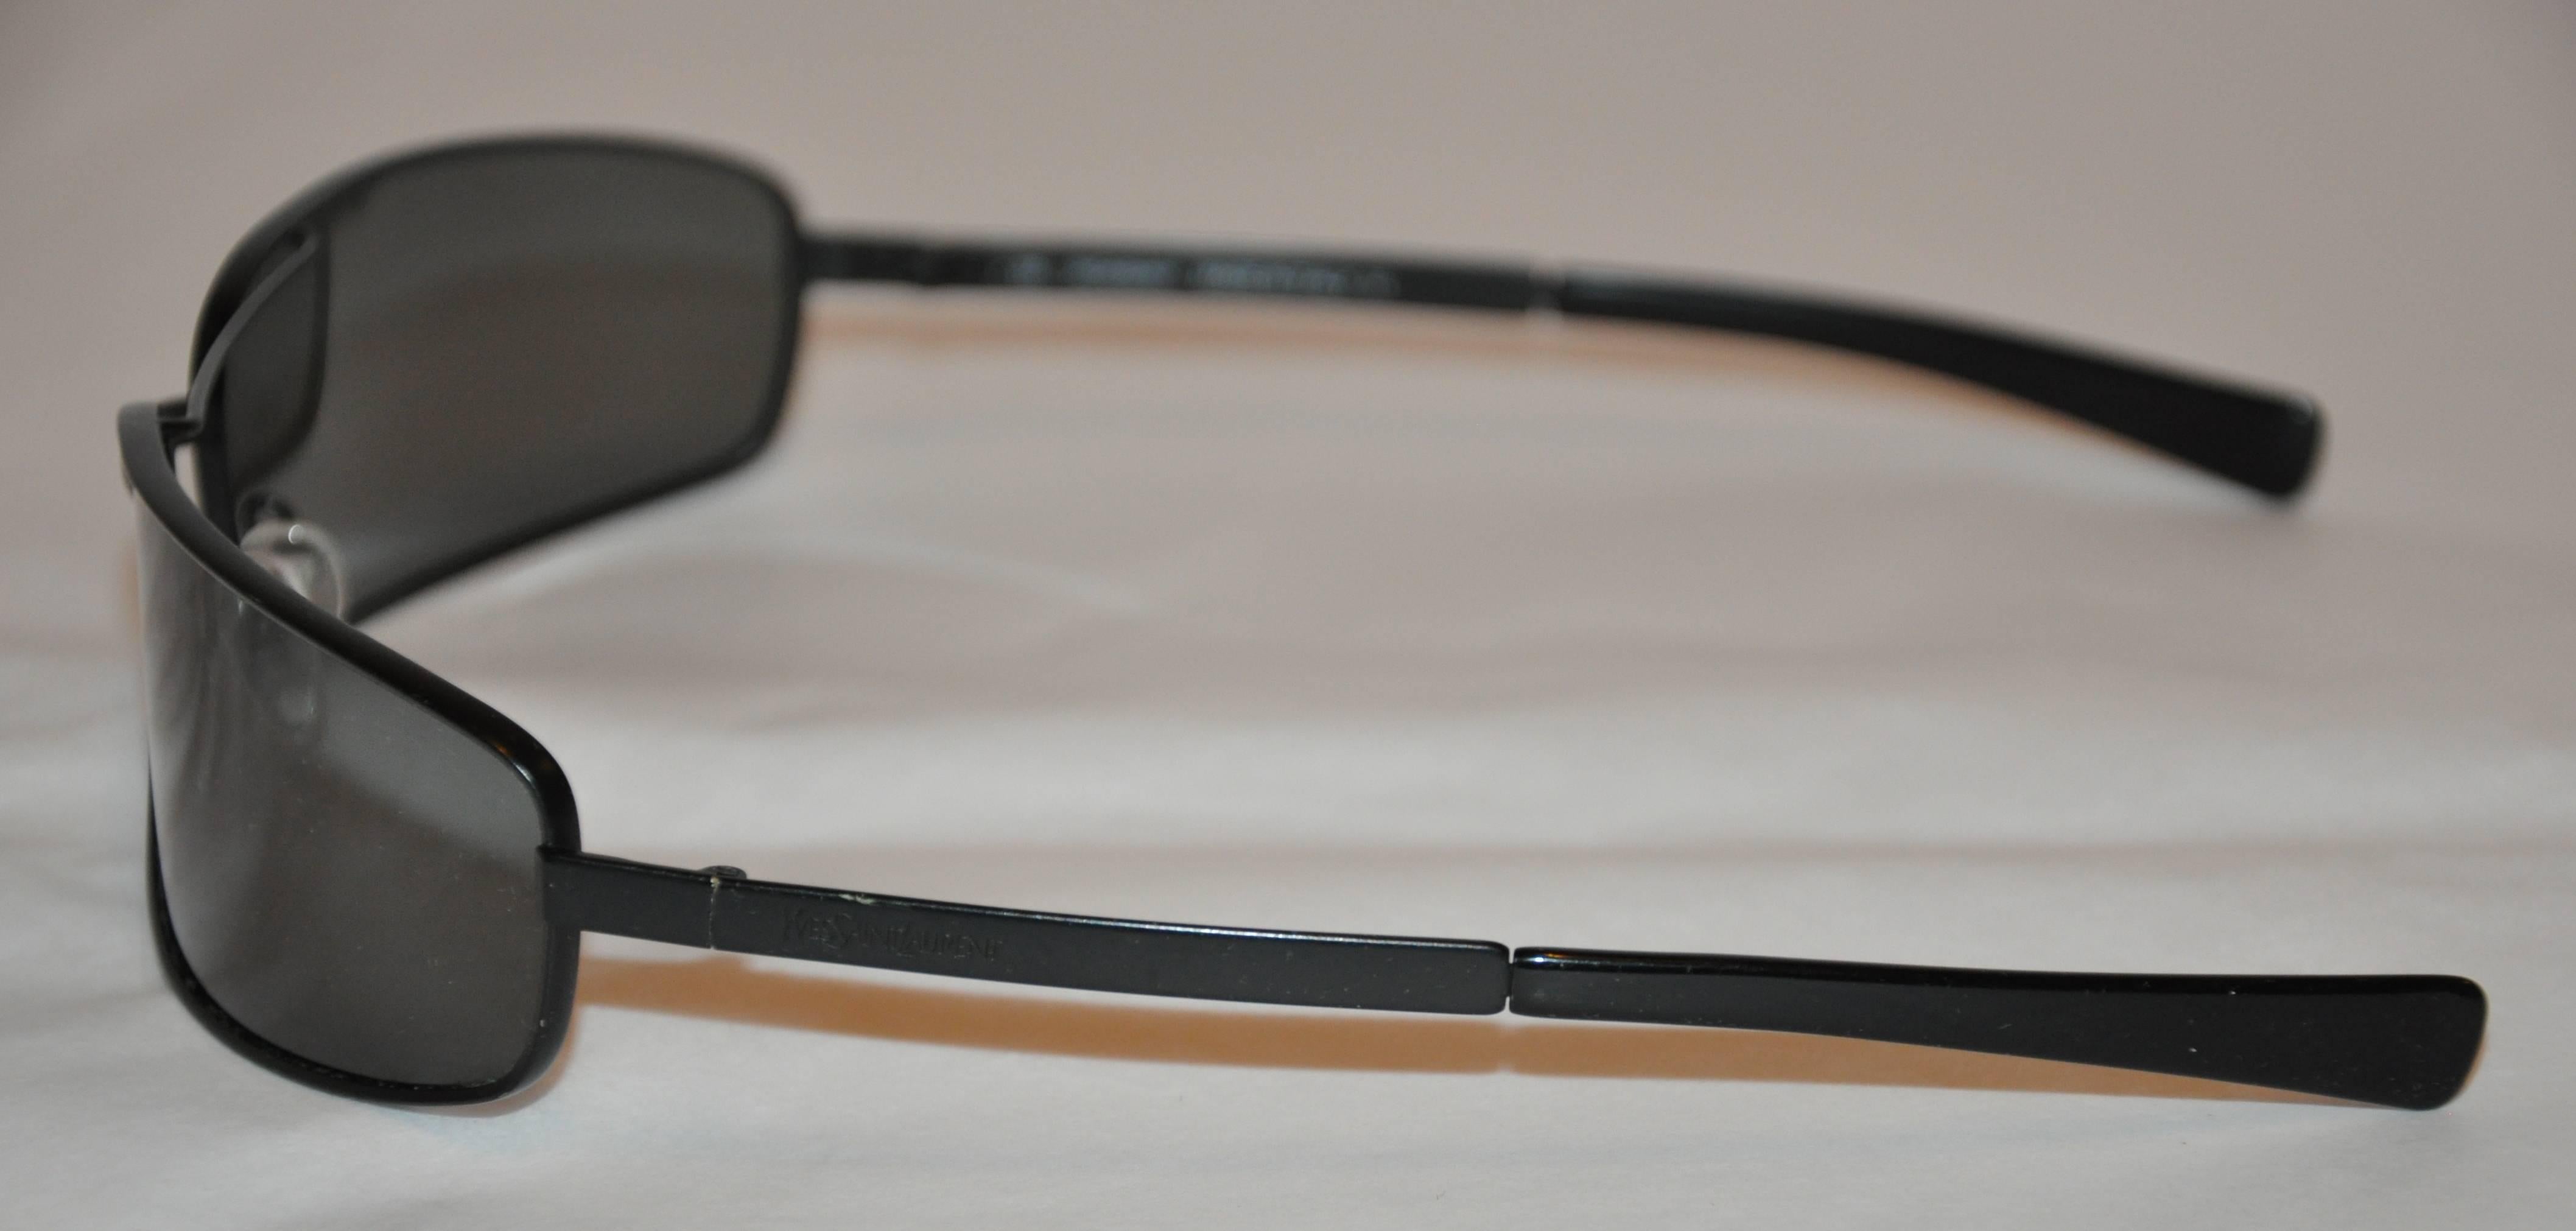           Yves Saint Laurent black hardware frame sunglasses measures 5